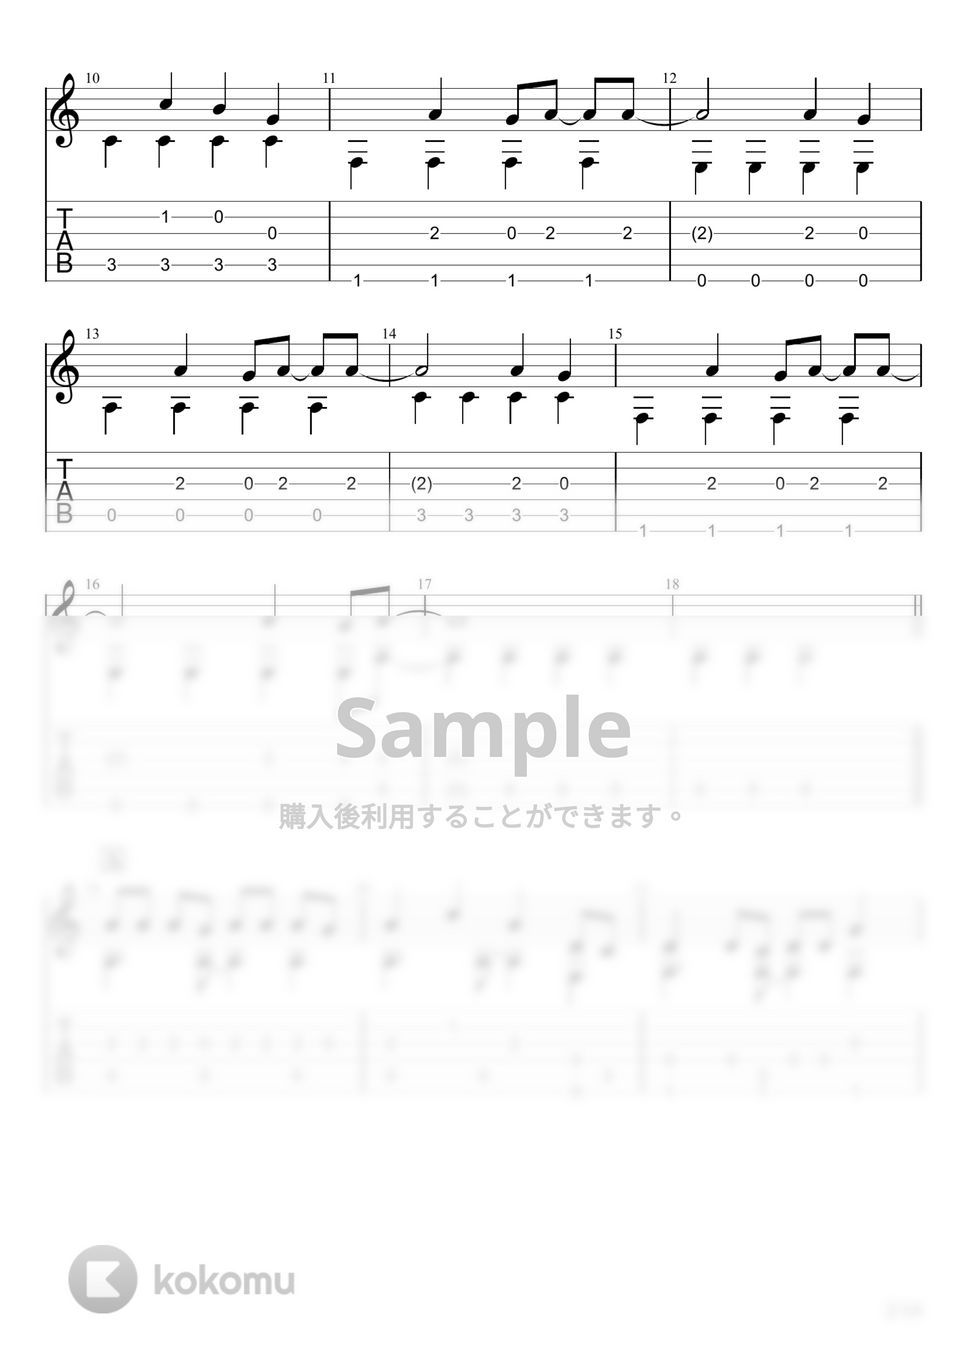 すりぃ - エゴロック (ソロギター) by u3danchou